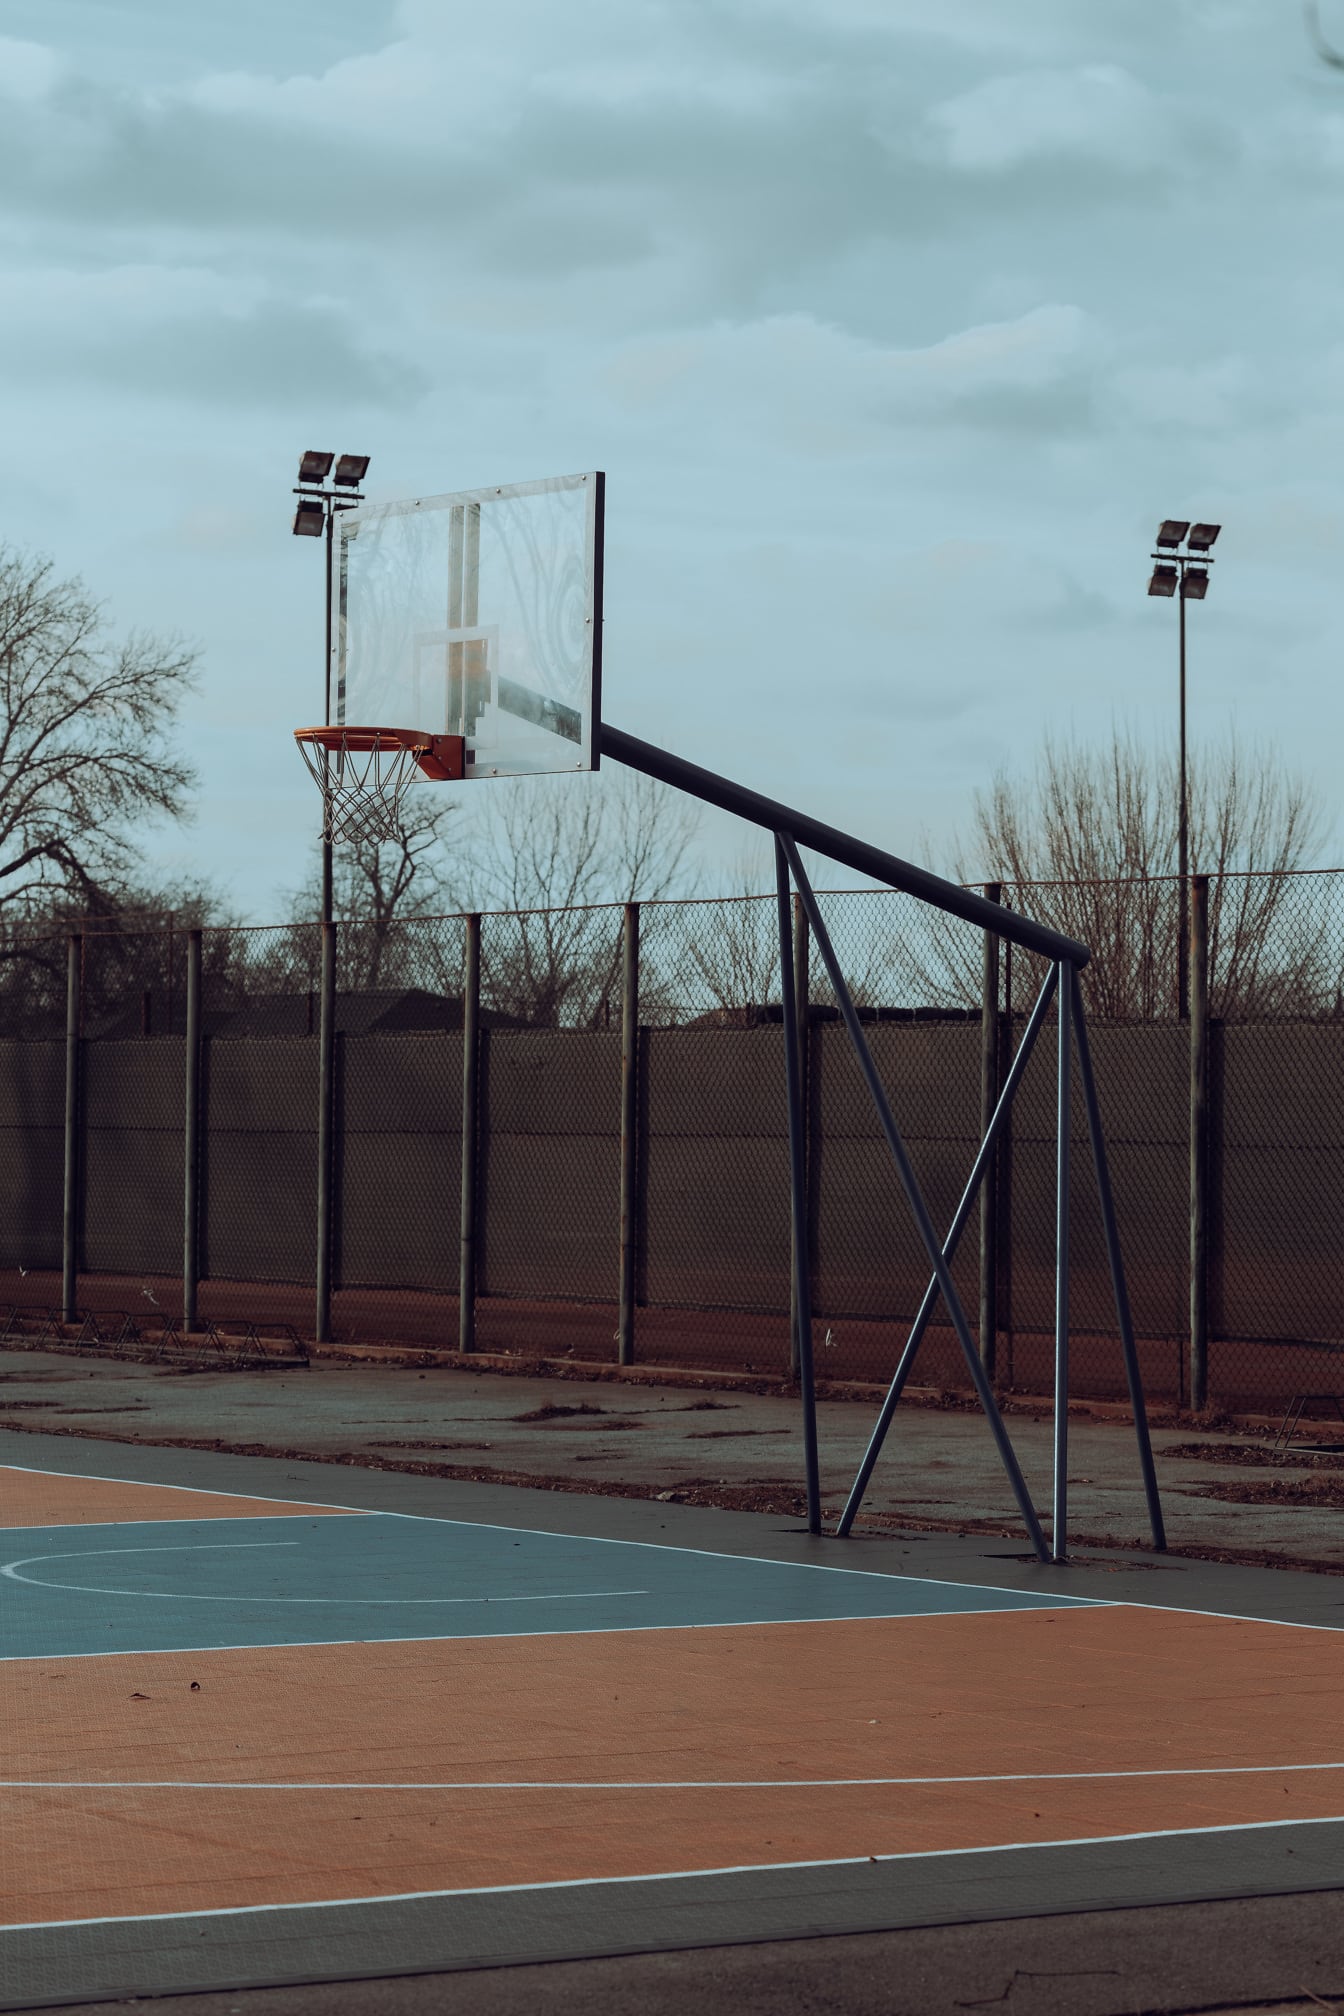 Prázdné basketbalové hřiště v městské zástavbě